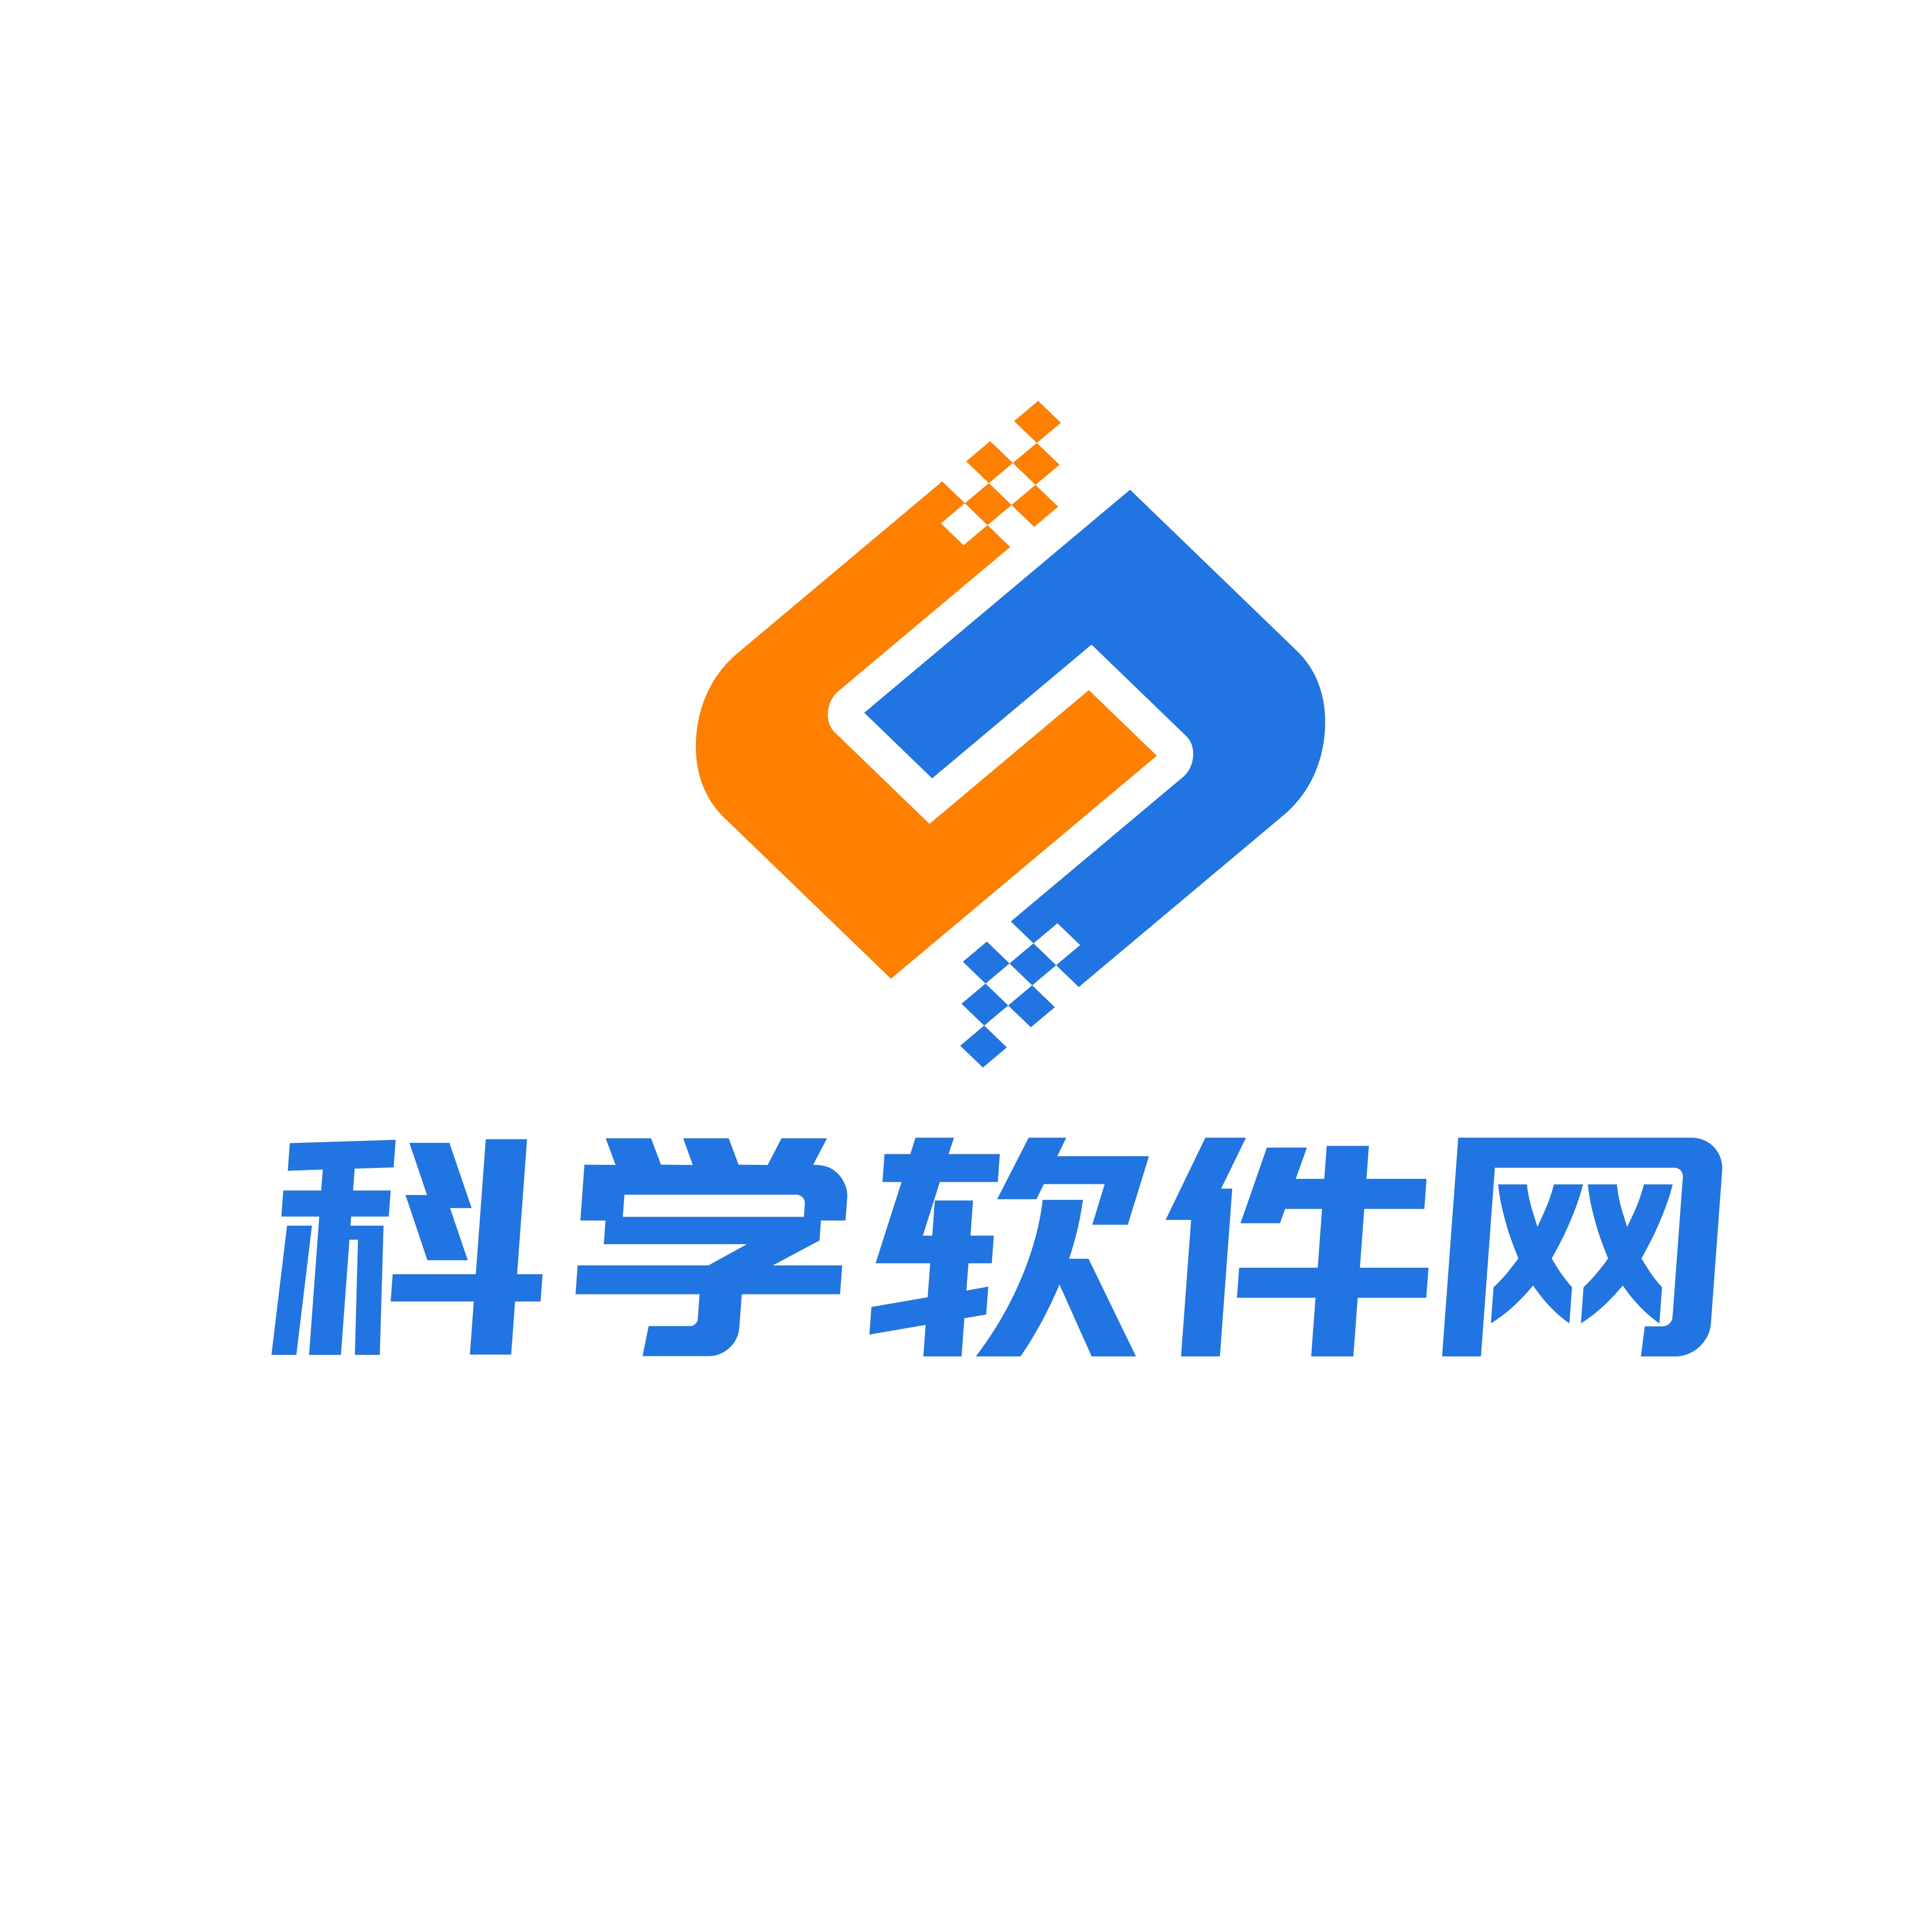 北京天演融智软件有限公司